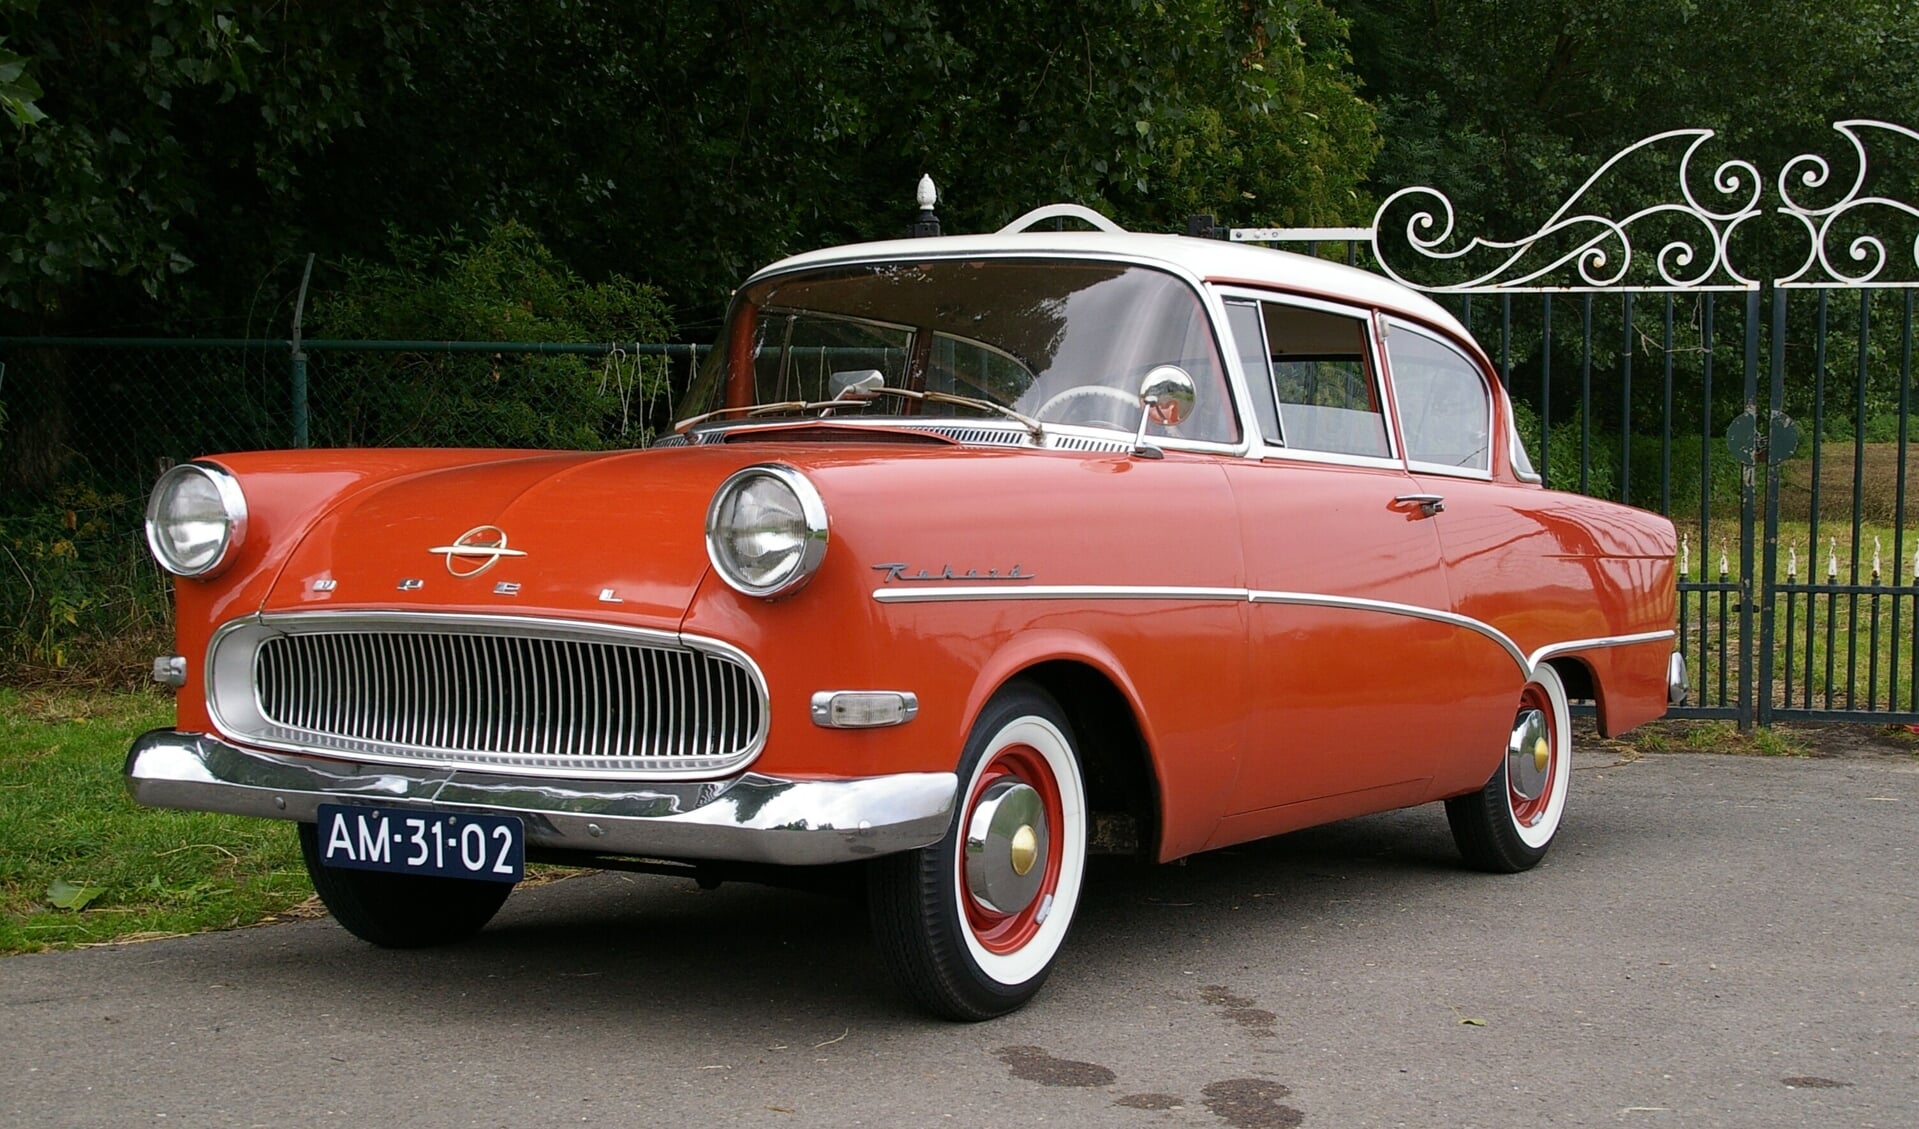 Deze Opel Record uit 1957 is één van de auto's die te zien is in de Dorpsstraat.

